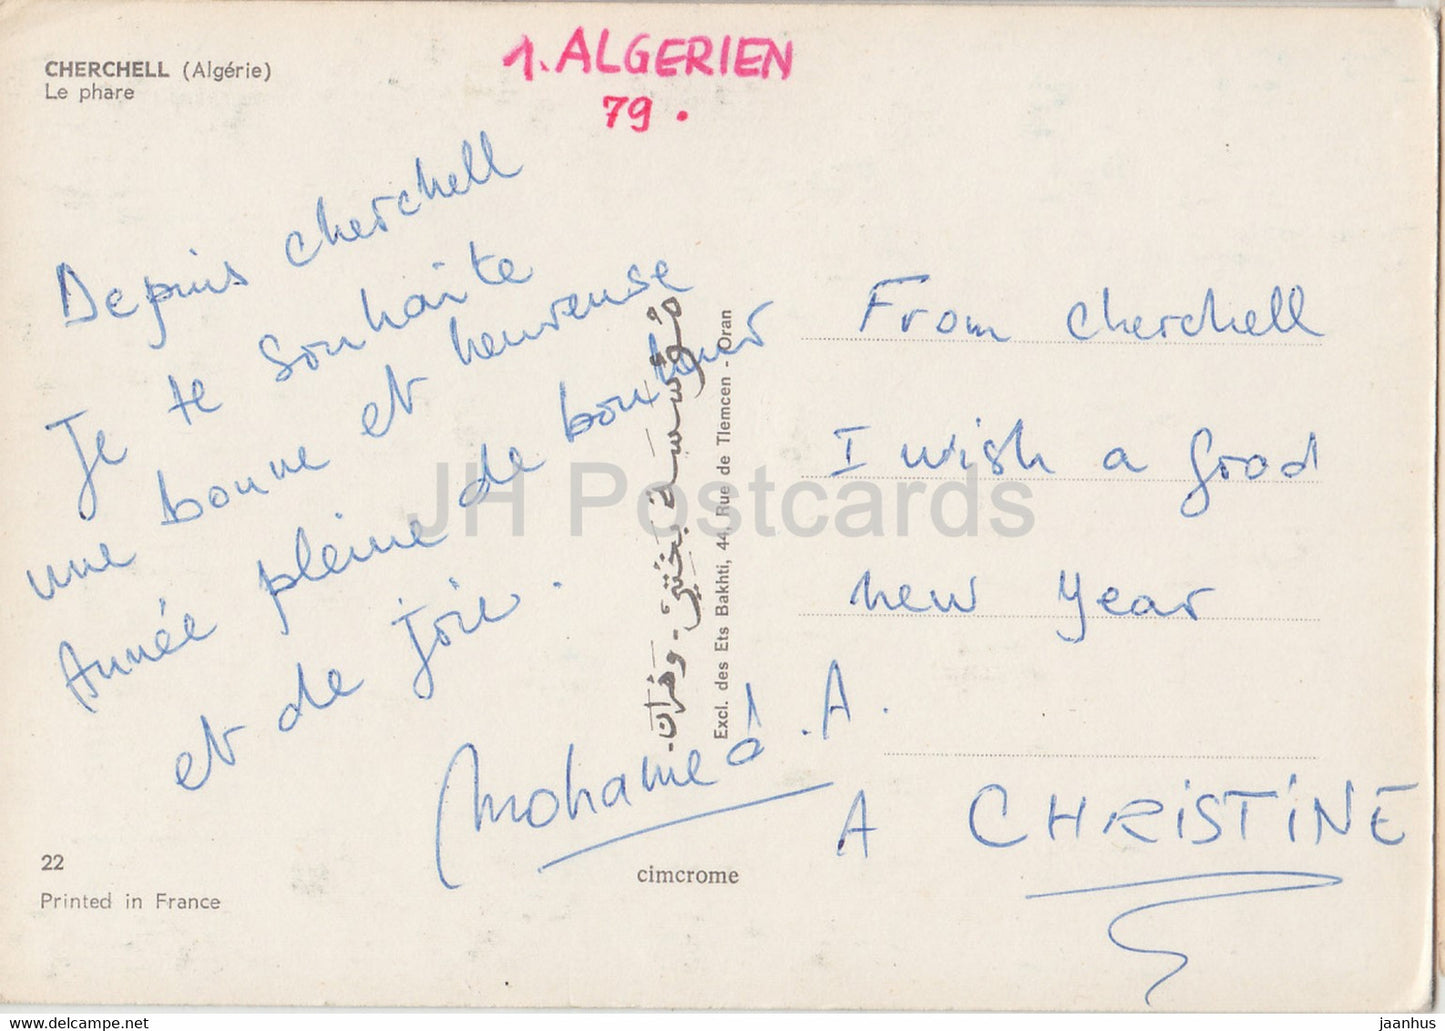 Cherchell - Le Phare - Leuchtturm - Beau Fixe - 1979 - Algerien - gebraucht